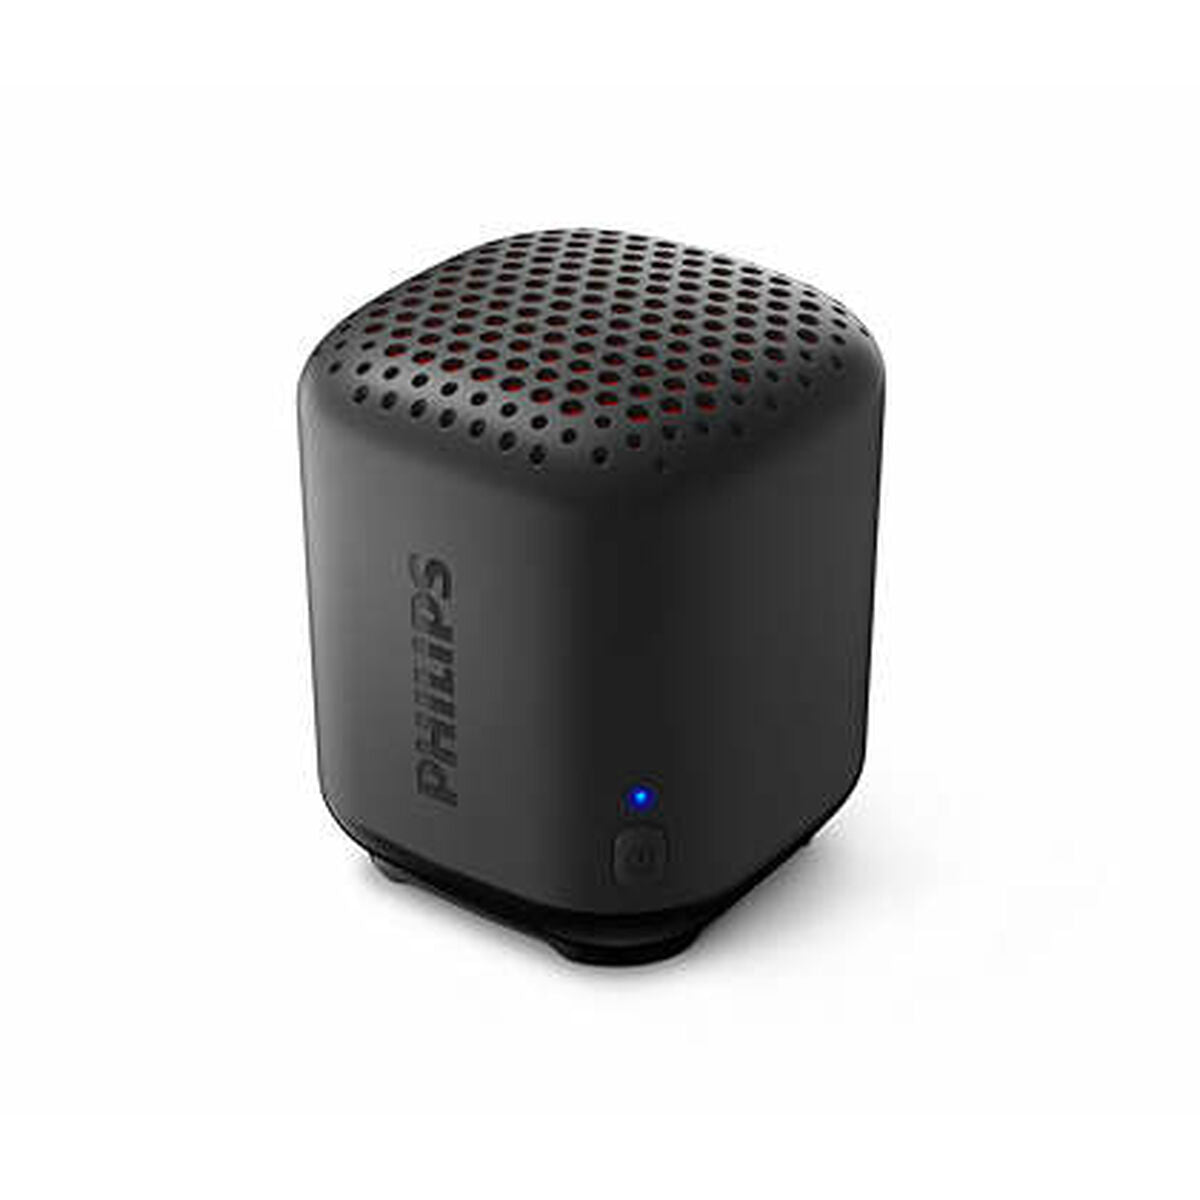 Tragbare Bluetooth -Lautsprecher Philips Tas1505b/00 Schwarz